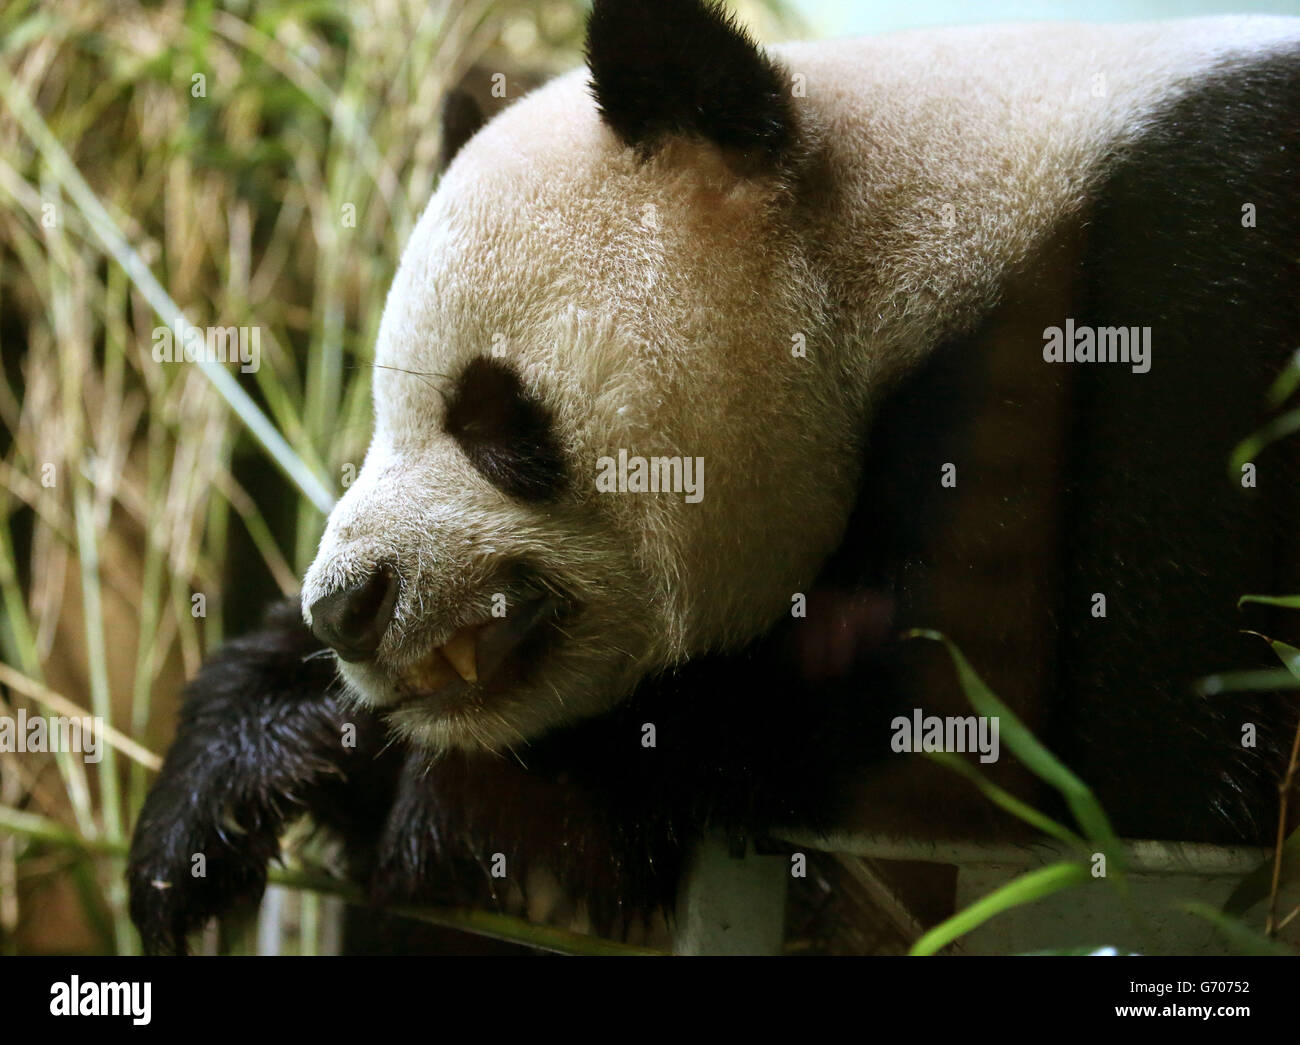 Yang Guang nel suo recinto allo zoo di Edimburgo, dato che i panda giganti sono un passo più vicino alla finestra di riproduzione annuale prevista per 36 ore, Con gli esperti che confermano un crossover cruciale dell'ormone nella panda femminile Tian Tian ora ha avuto luogo e che dovrebbe entrare in estrus entro i prossimi sette - 14 giorni. Foto Stock